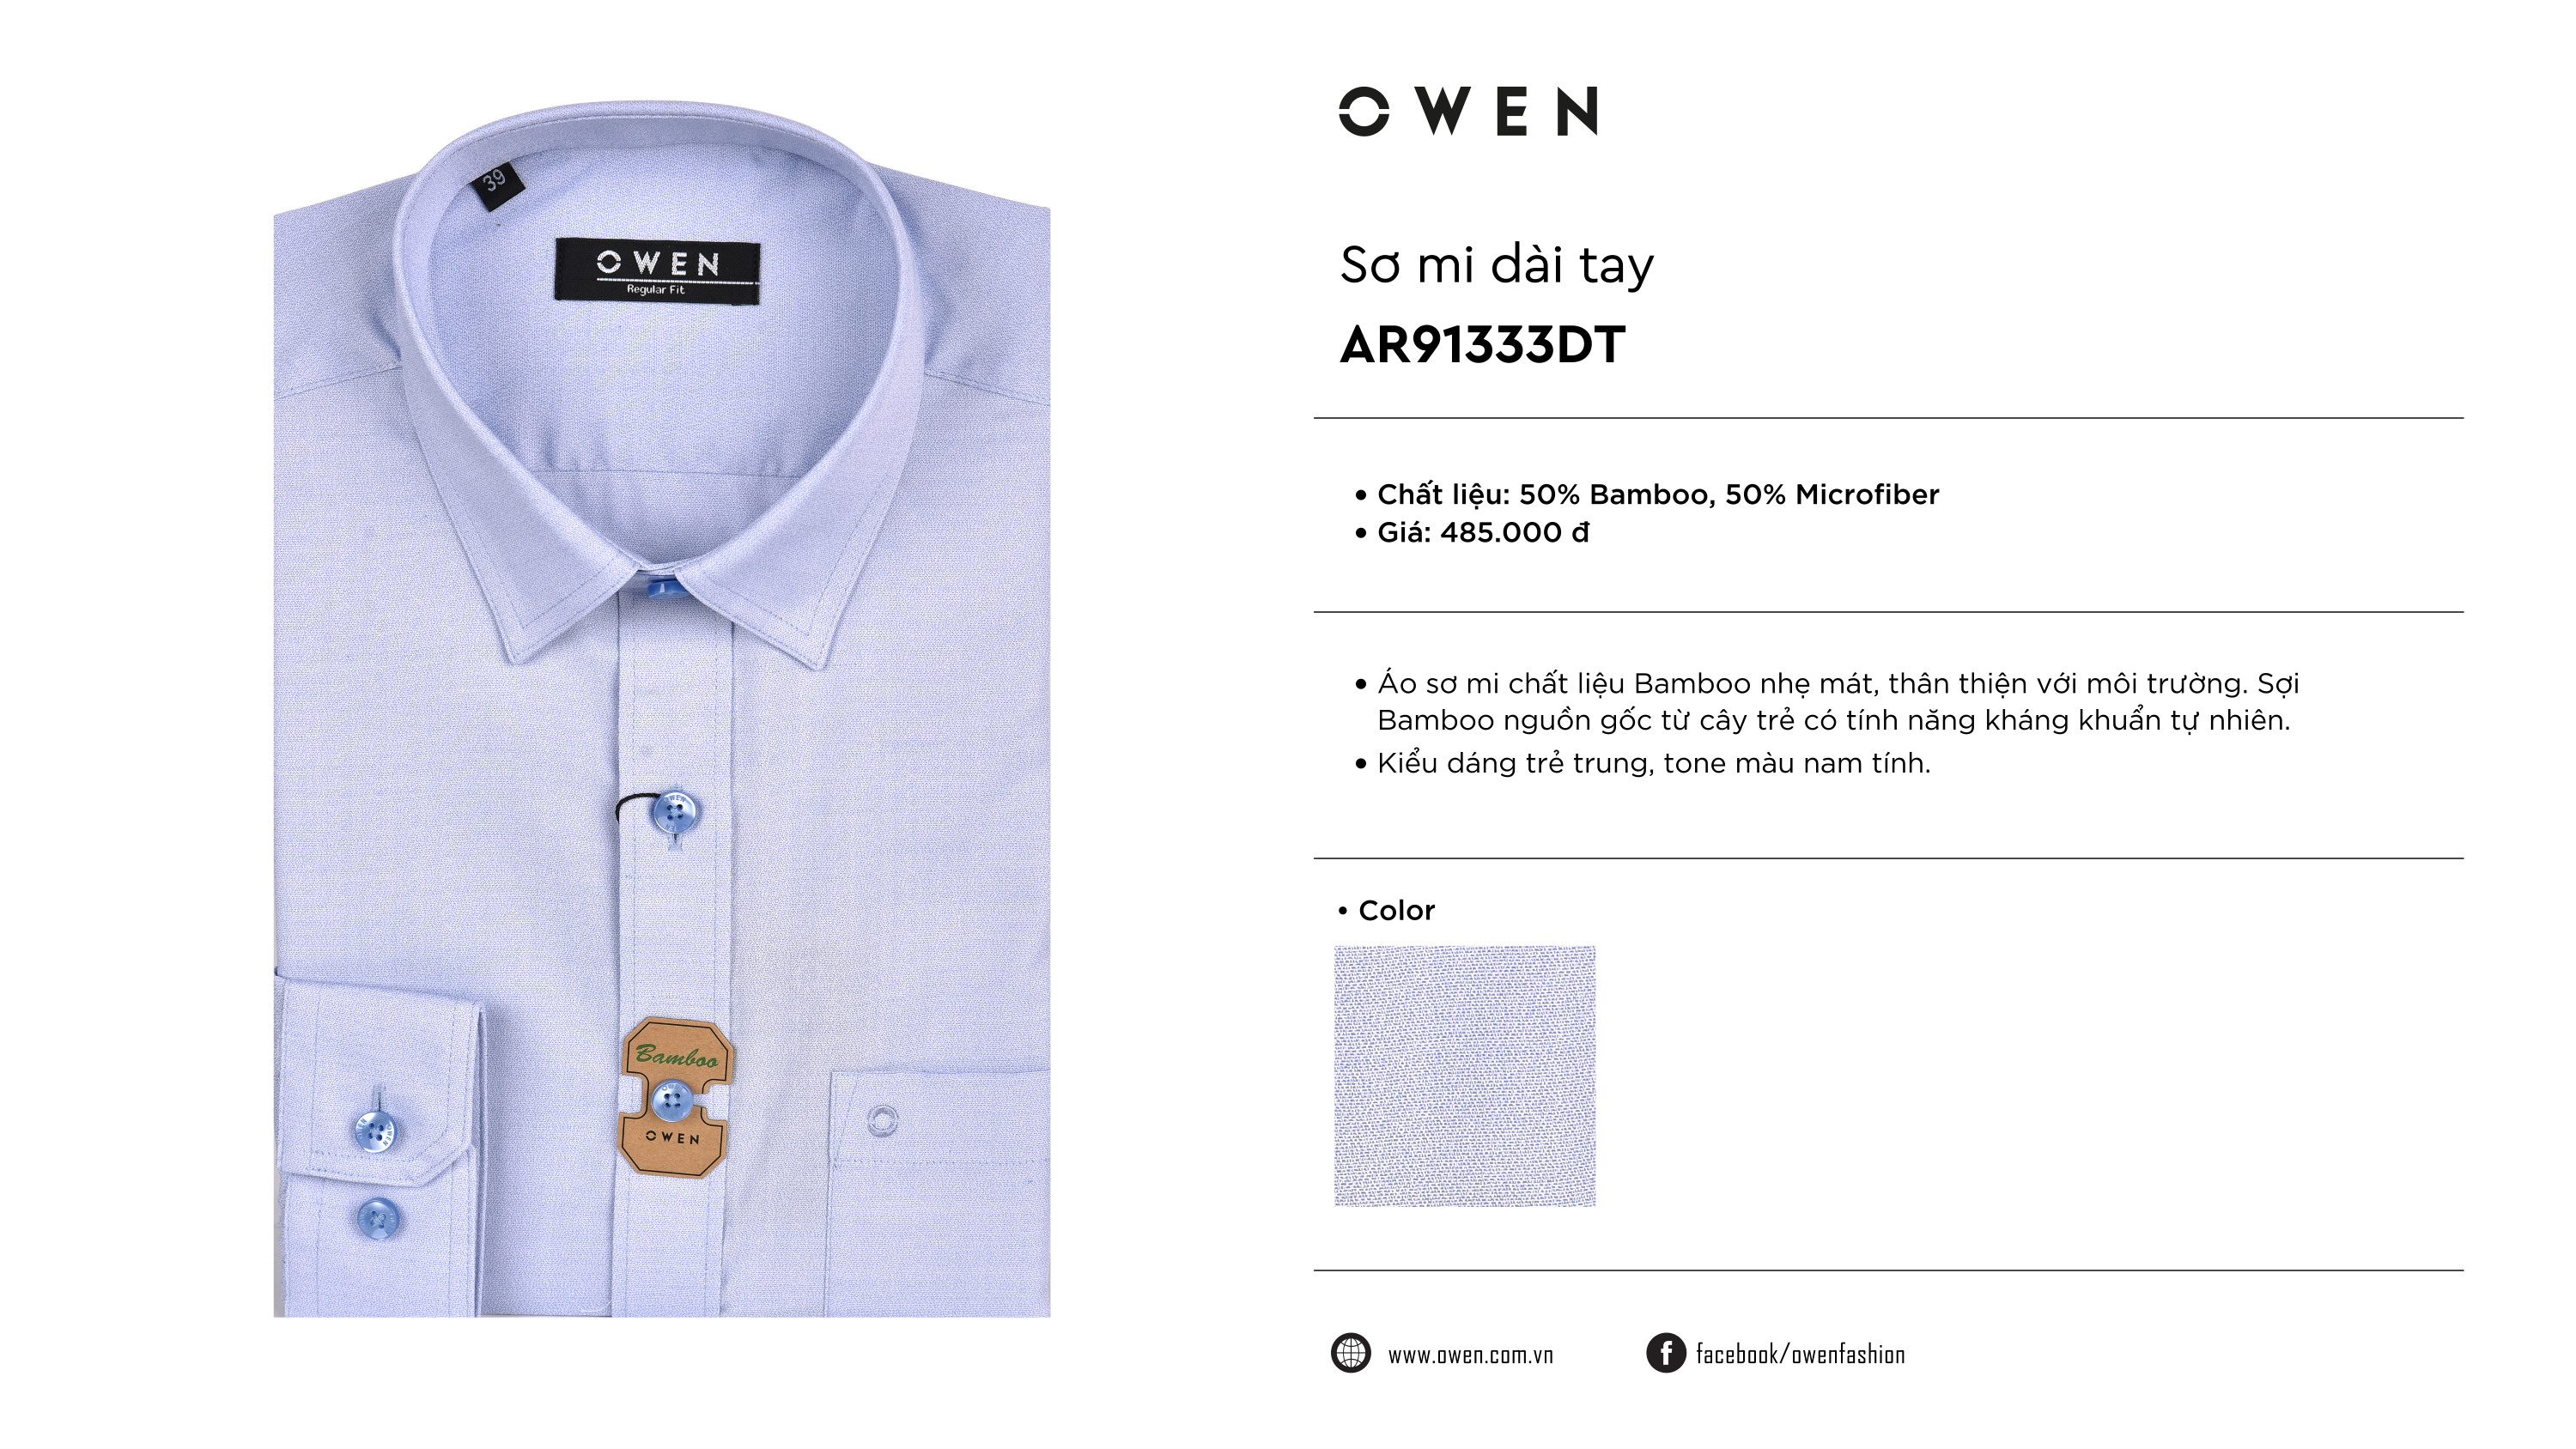 Áo Sơ Mi Nam Tay Dài Owen AS22941D Màu Ghi Xám Chấm Bi Dáng Slim Fit   Không túi Chất Liệu Vải Lô Hội OwenShop